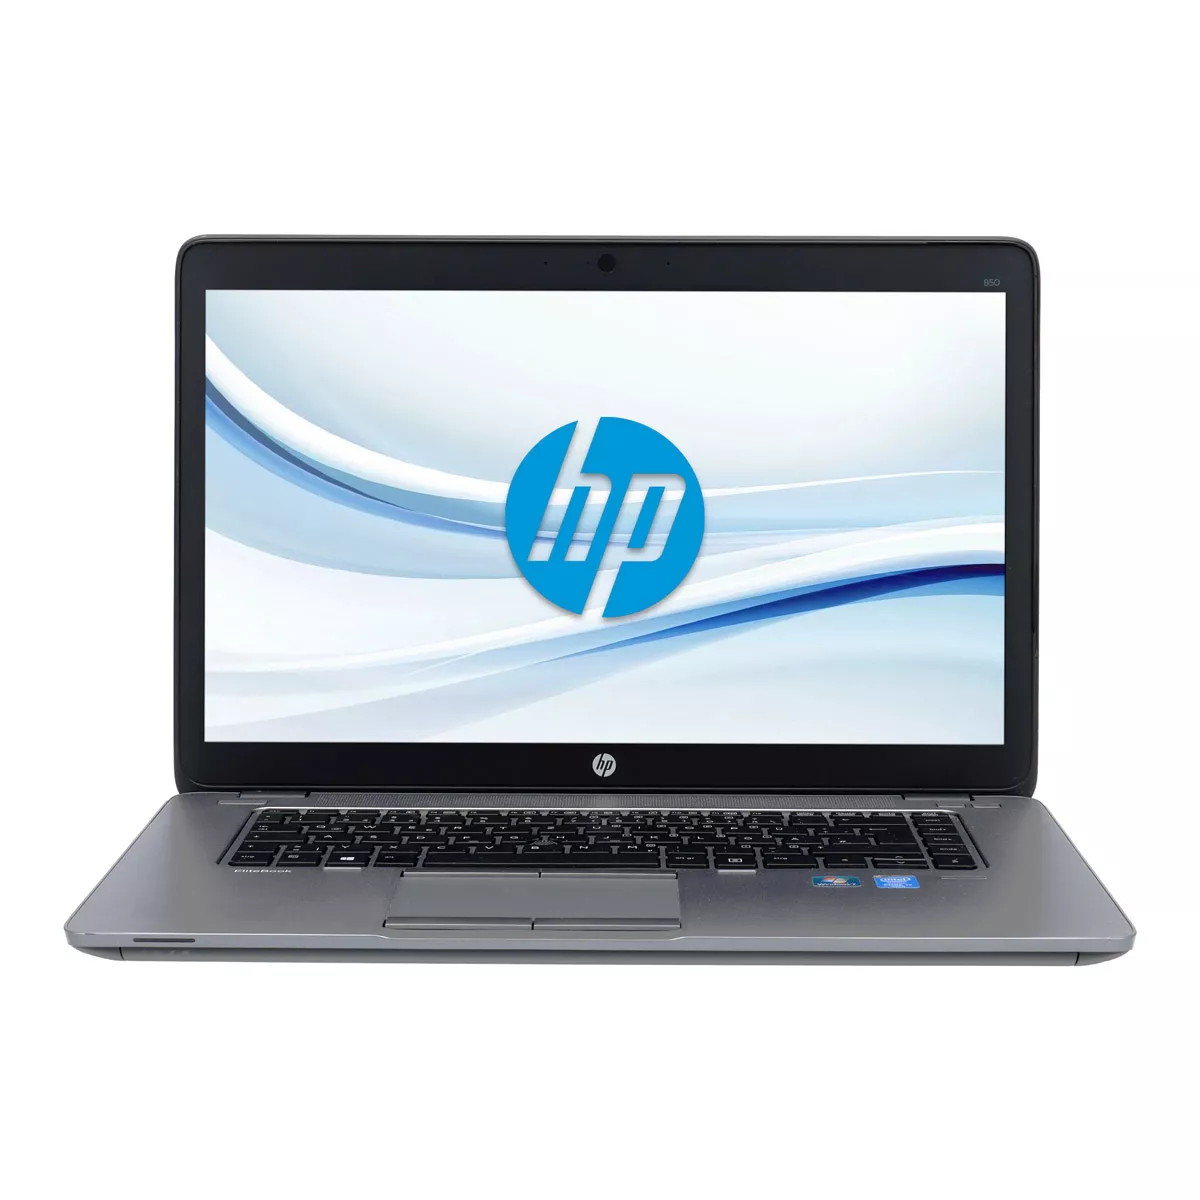 HP EliteBook 850 G2 Core i5 5300U 2,30 GHz 240 GB SSD A